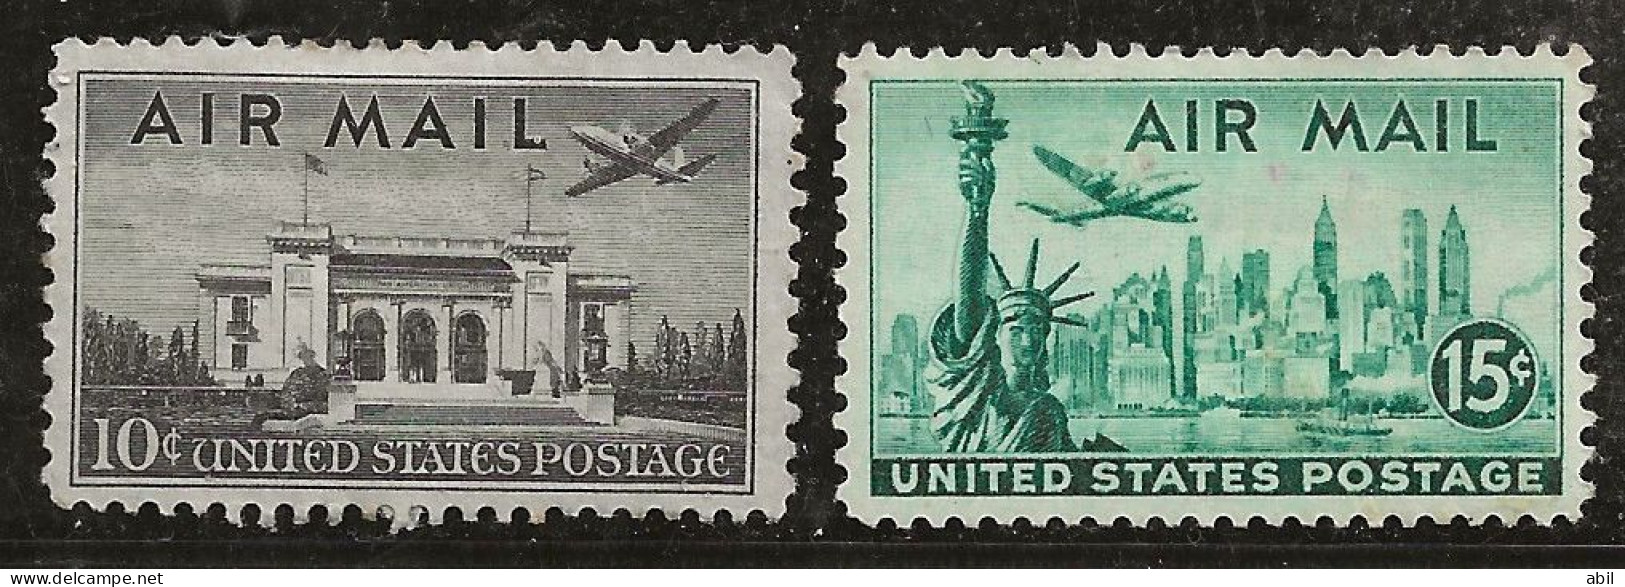 Etats-Unis 1947 N° Y&T :  Av 36 Et 37 * - 2b. 1941-1960 Nuovi